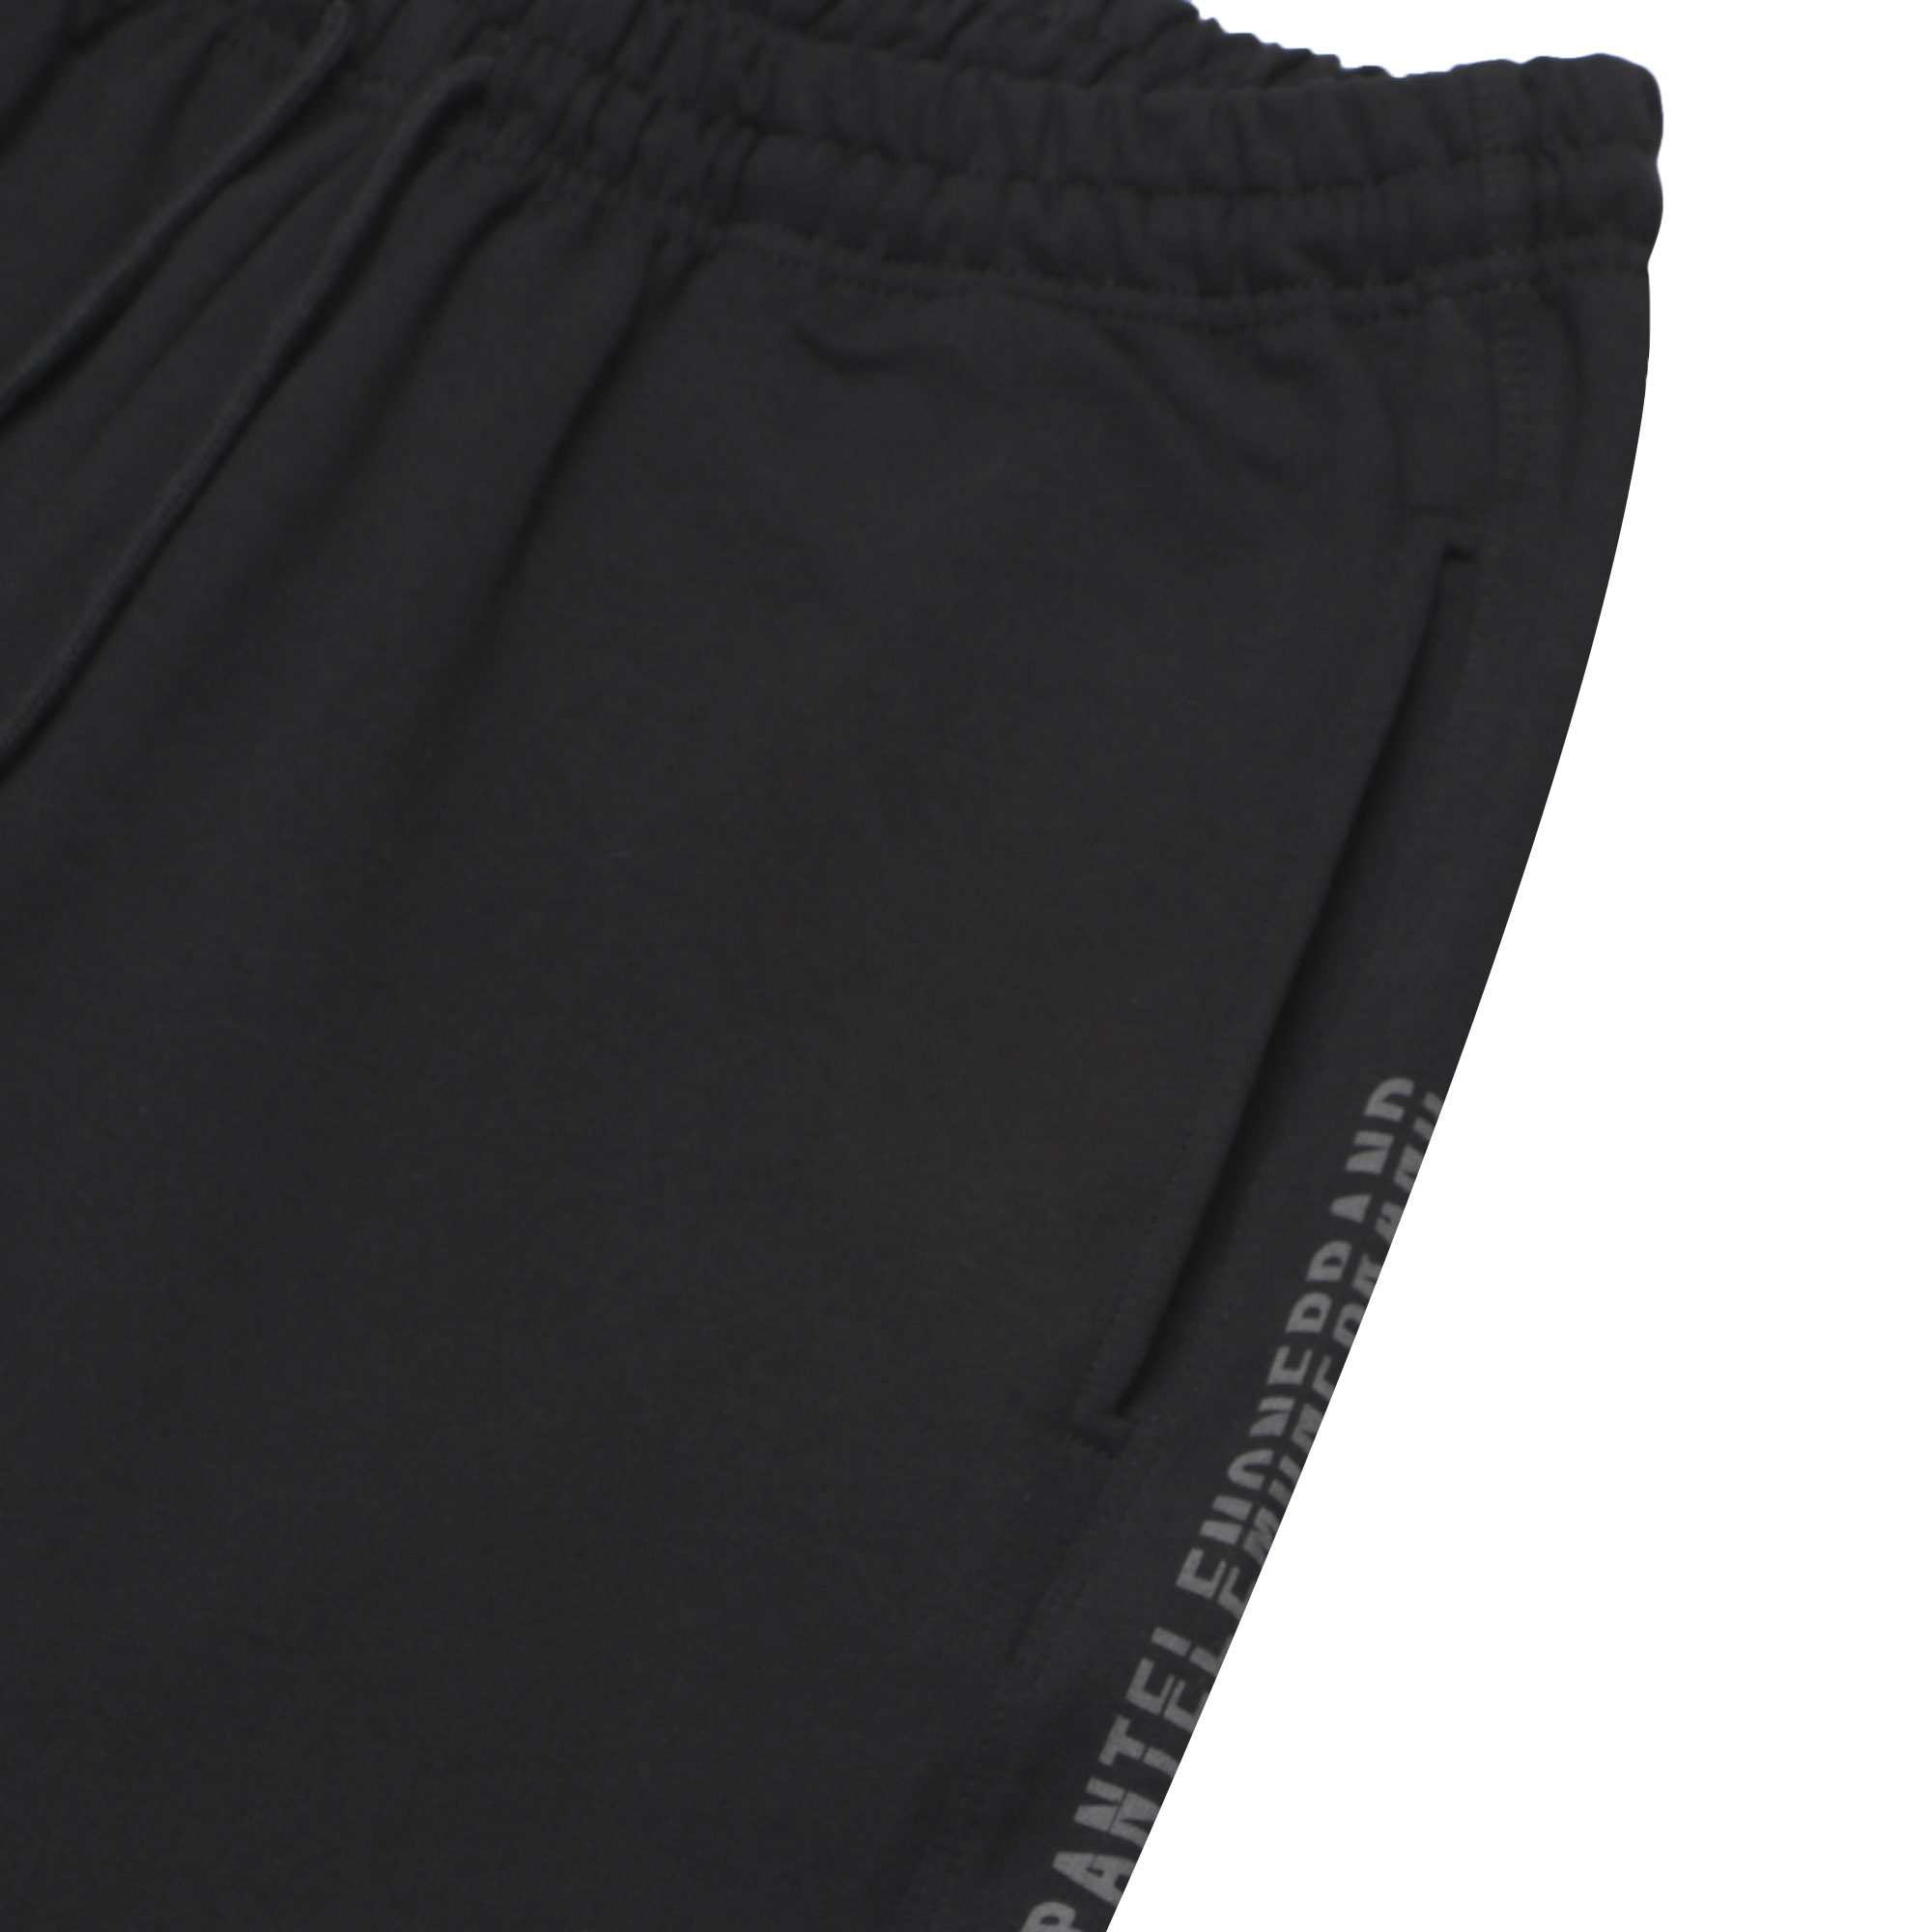 Мужские брюки Pantelemone домашние 56 черные, цвет черный, размер 56 - фото 4